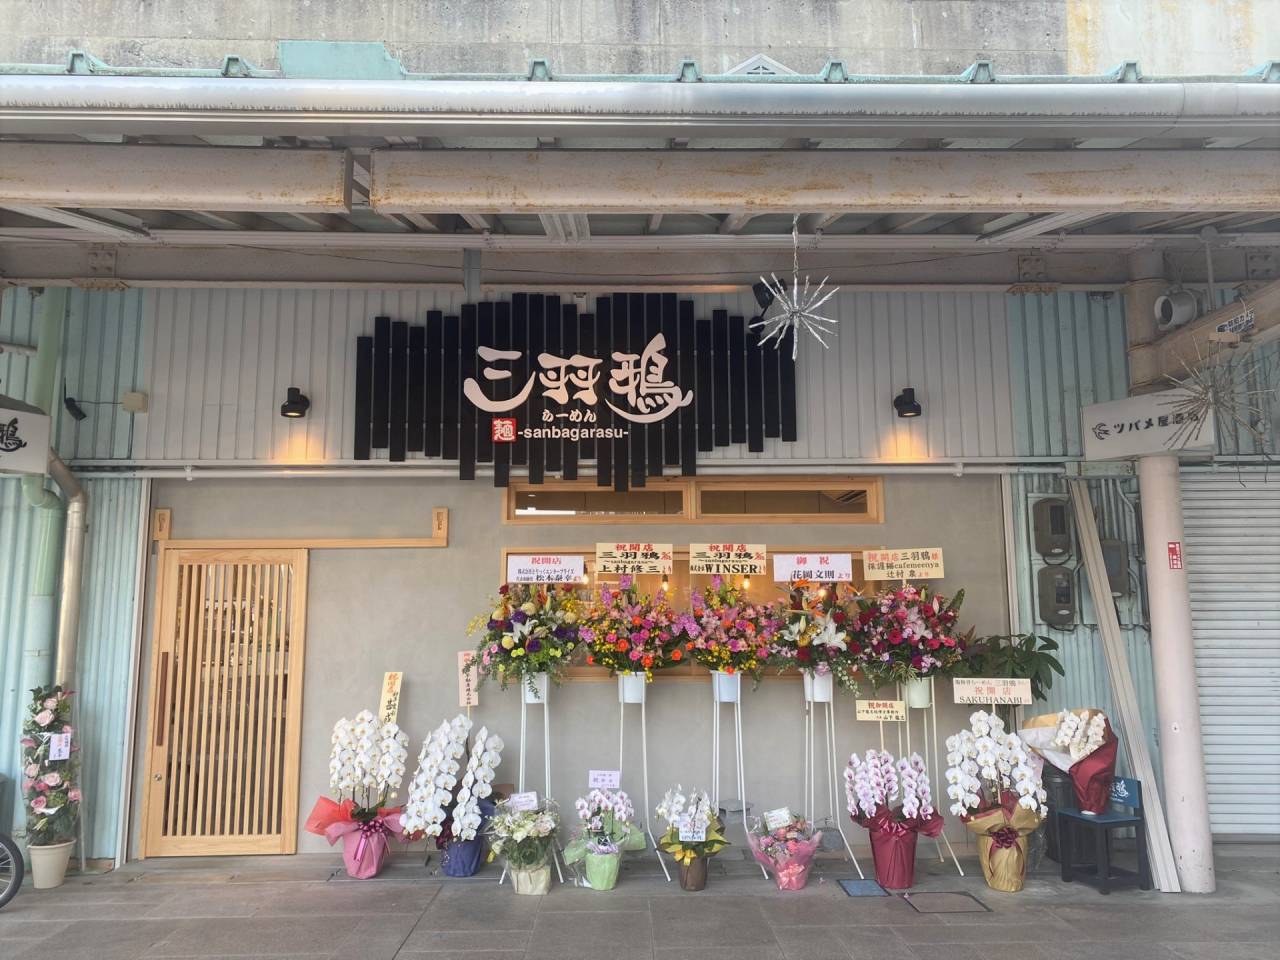 大和八木駅南側高架下にラーメン店三羽鴉2号店がオープンしました。